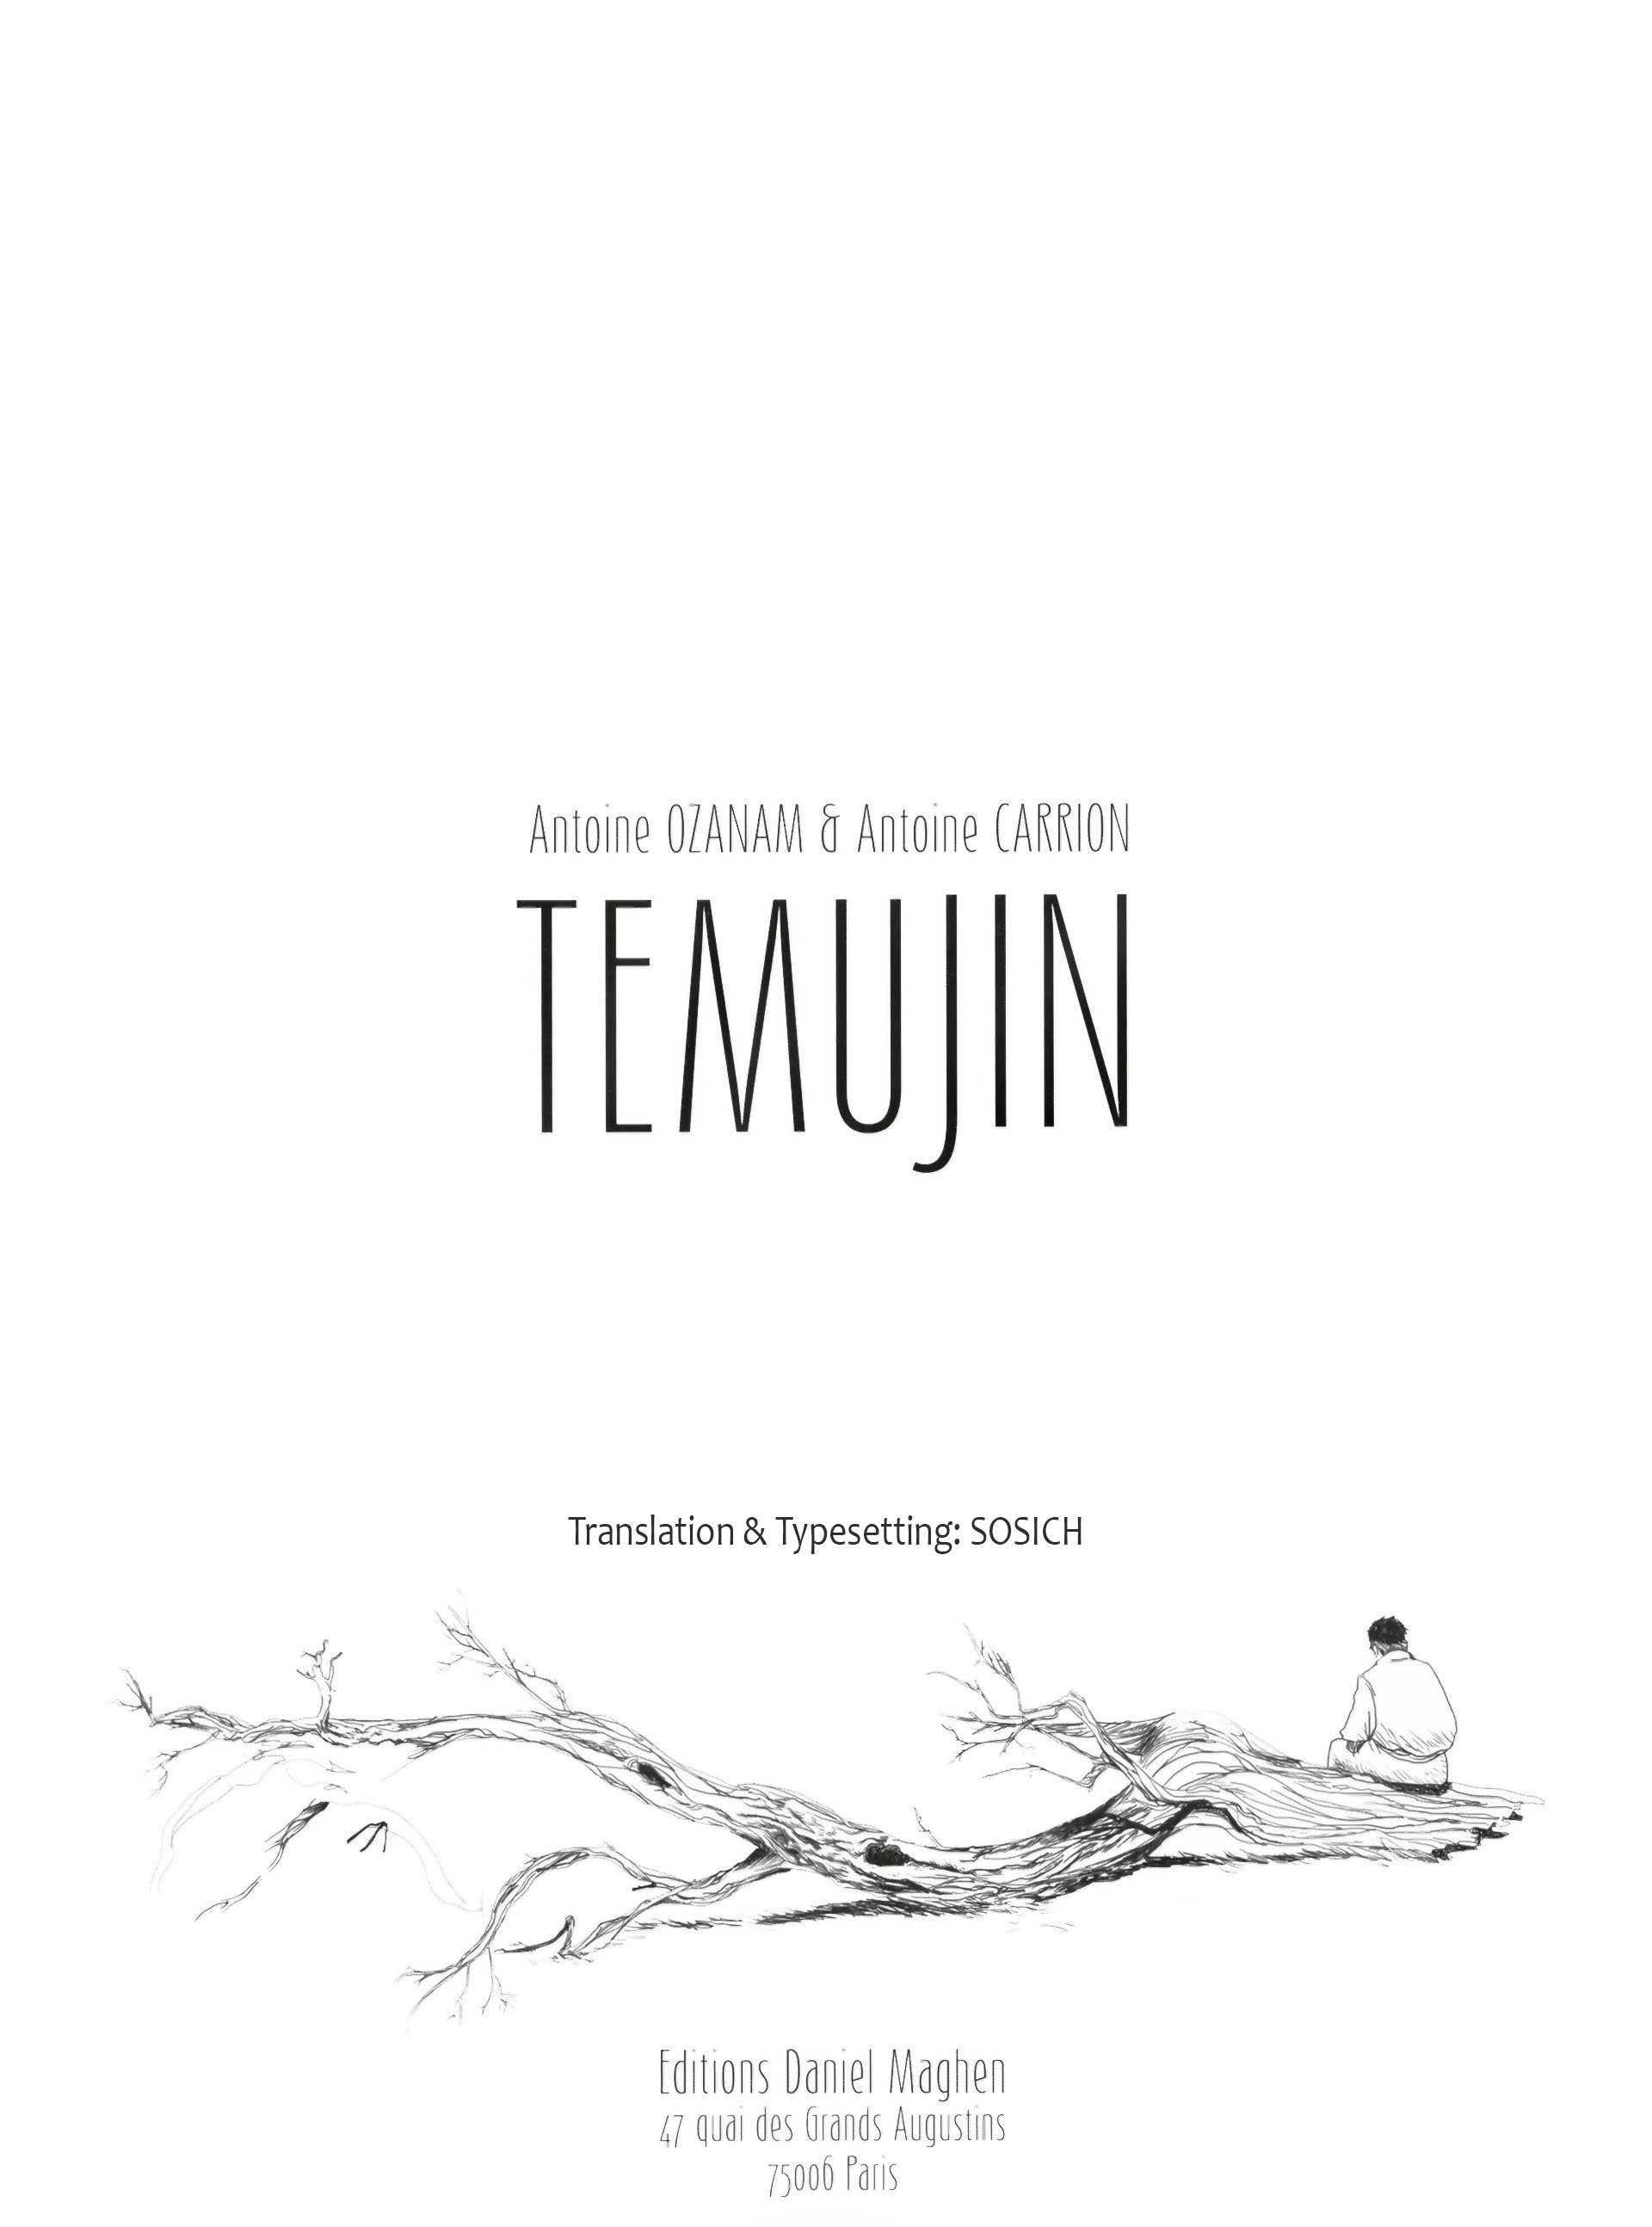 Read online Temujin comic -  Issue #1 - 7